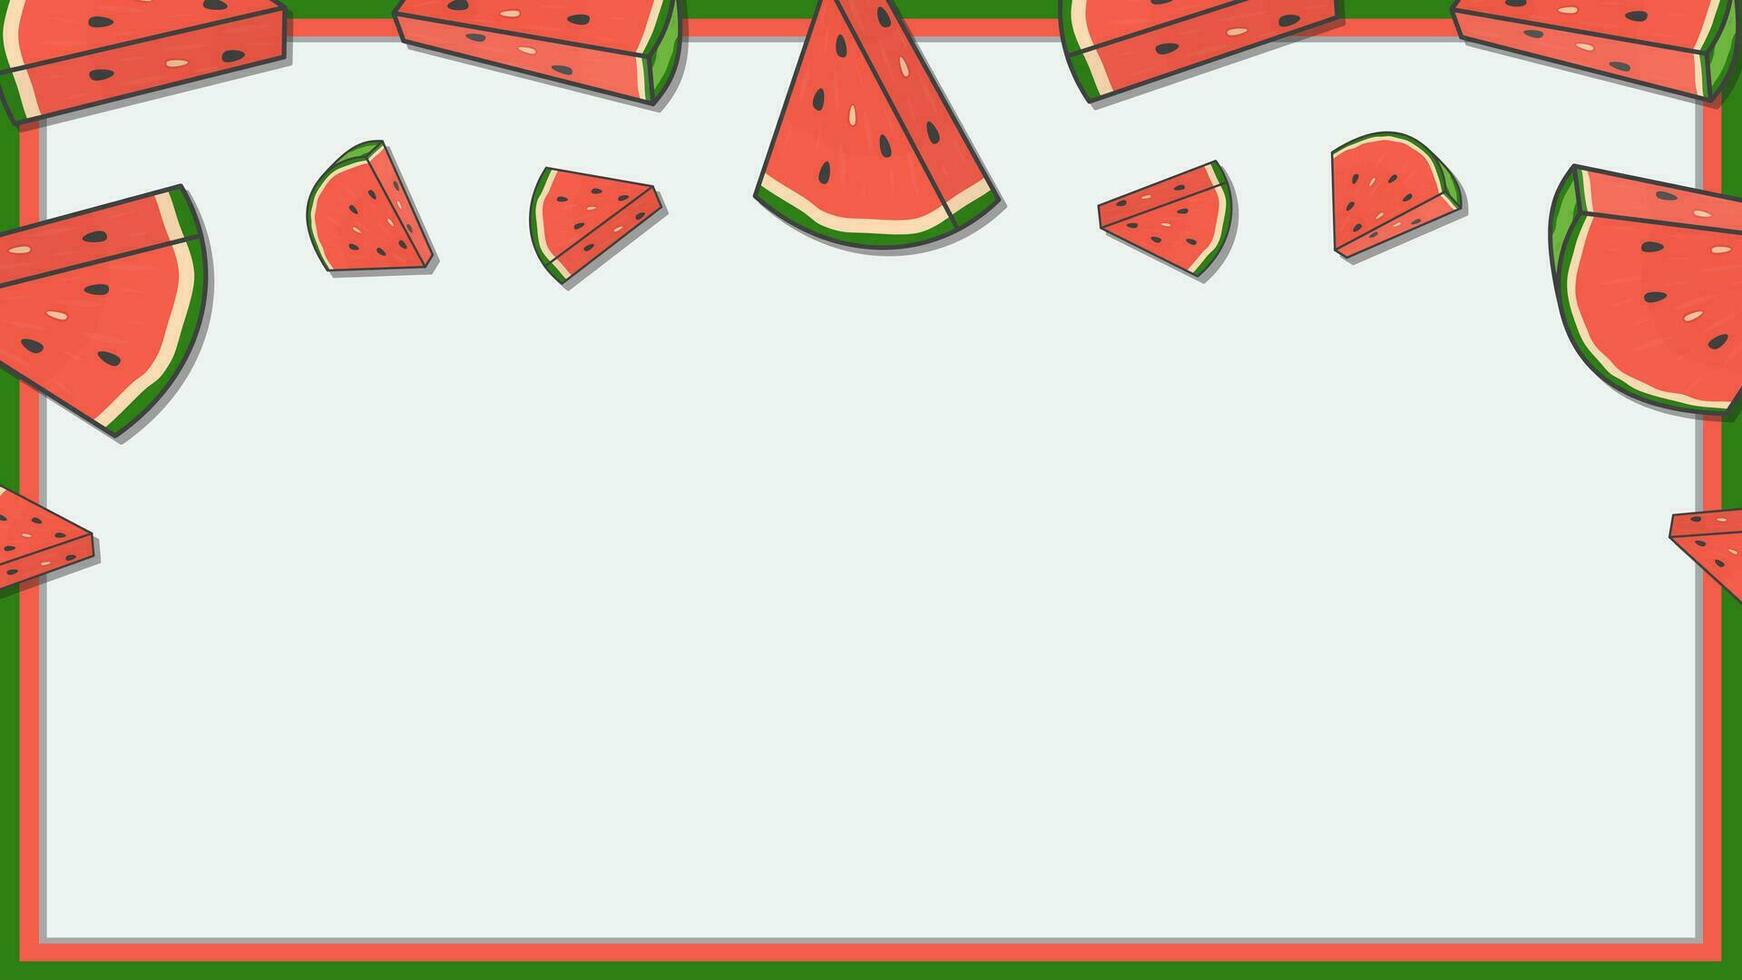 Wassermelone Obst Hintergrund Design Vorlage. Wassermelone Karikatur Vektor Illustration. Wassermelone Obst